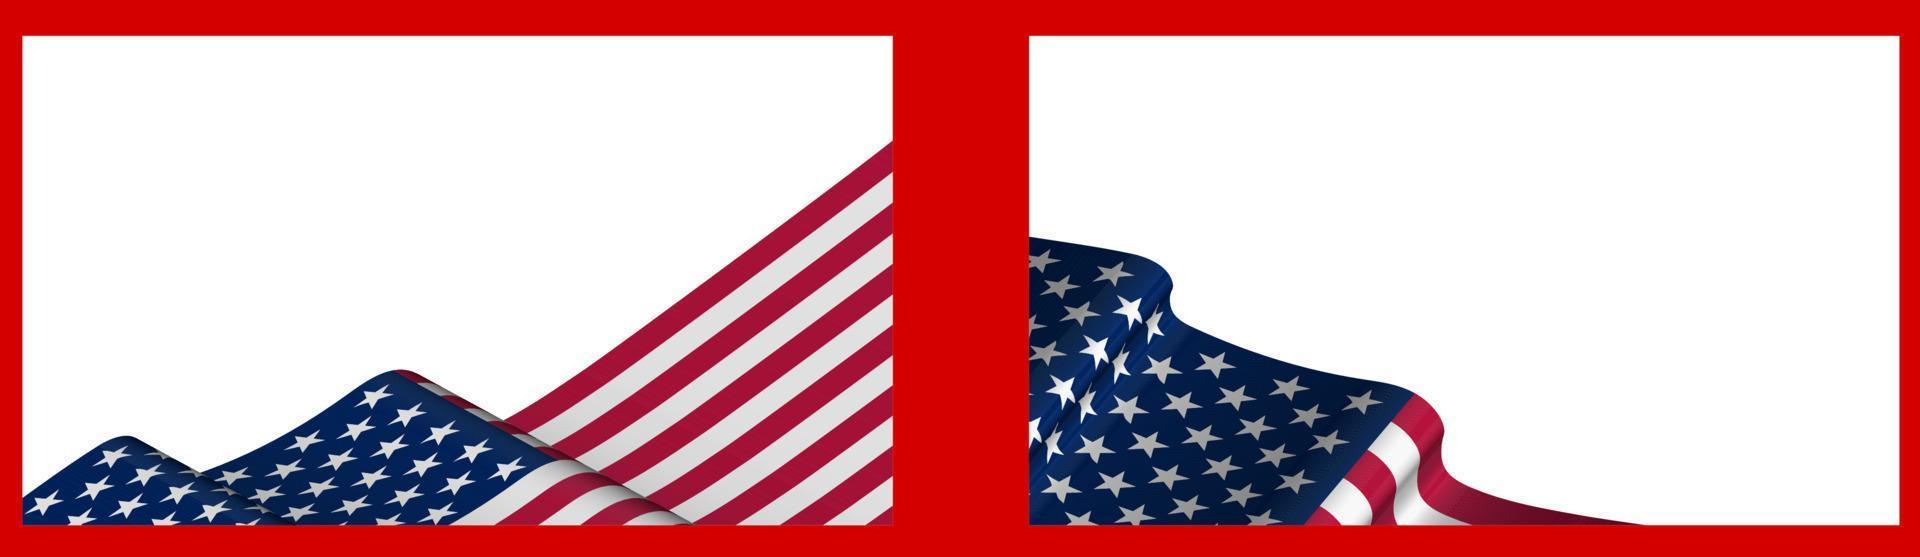 achtergrond, sjabloon voor feestelijk ontwerp. Amerikaanse vlag wappert in de wind. realistische vector op witte achtergrond